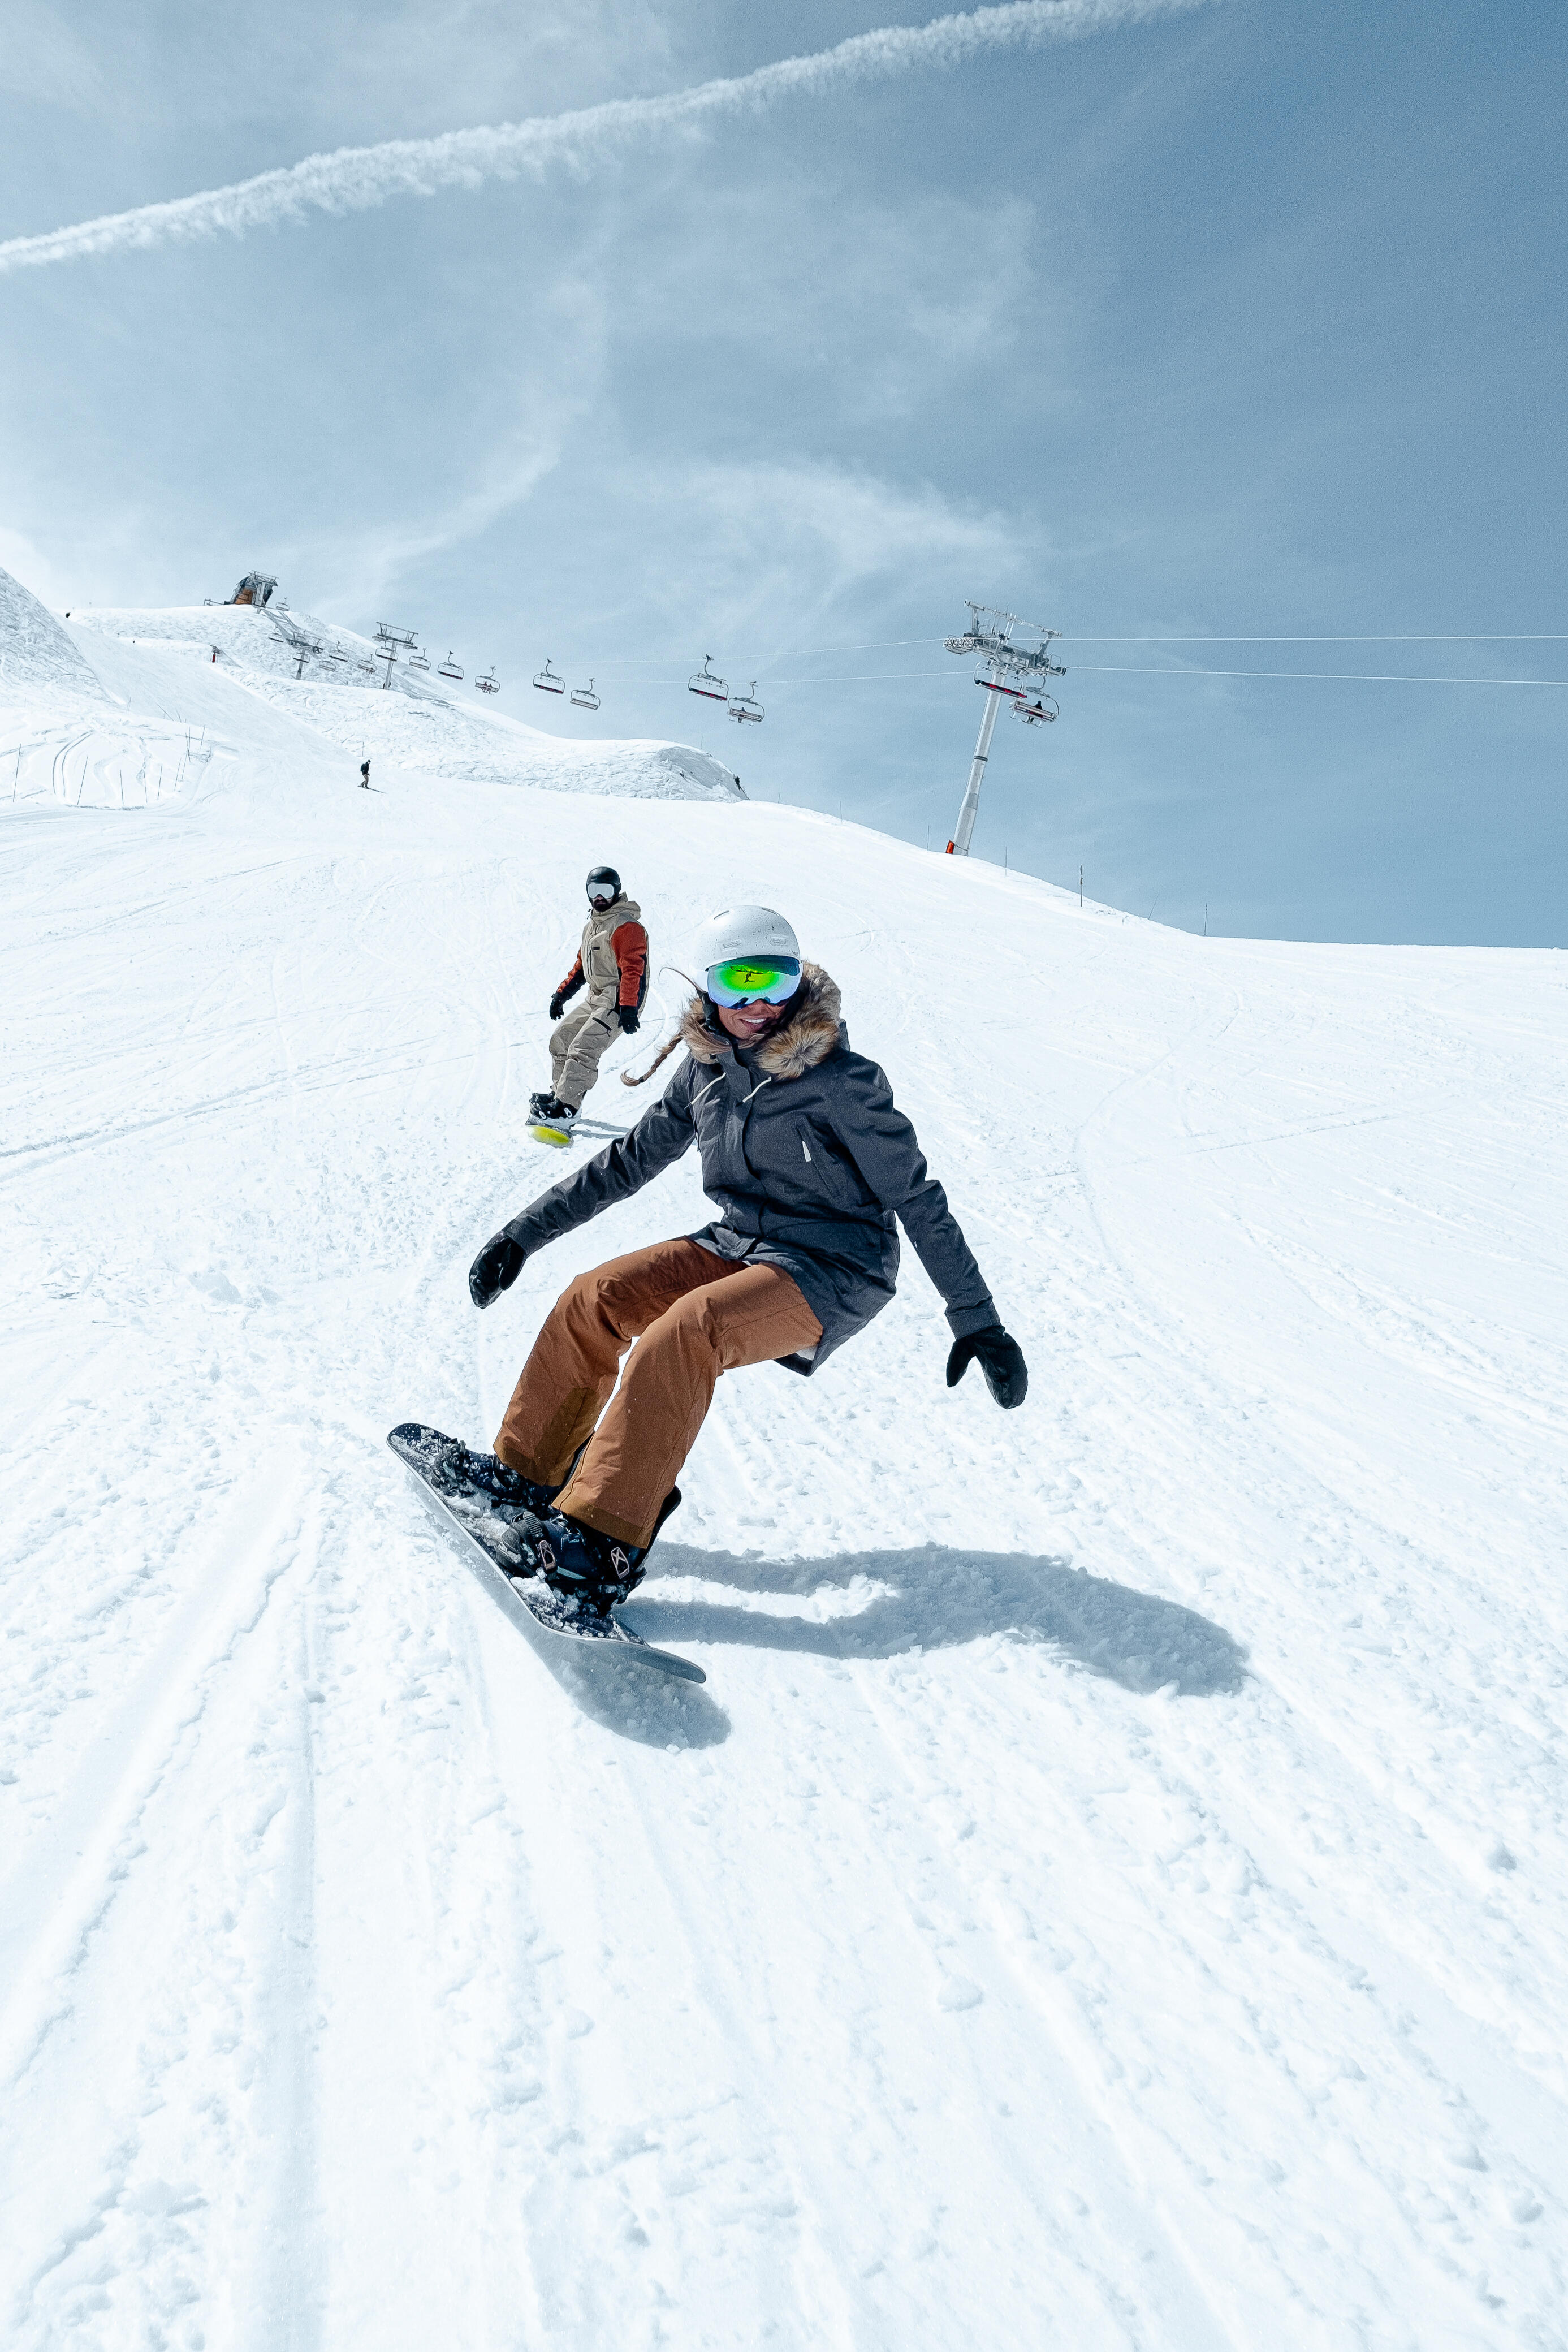 Women's Snowboard Jacket - SNB 500 Grey - Carbon grey - Dreamscape -  Decathlon